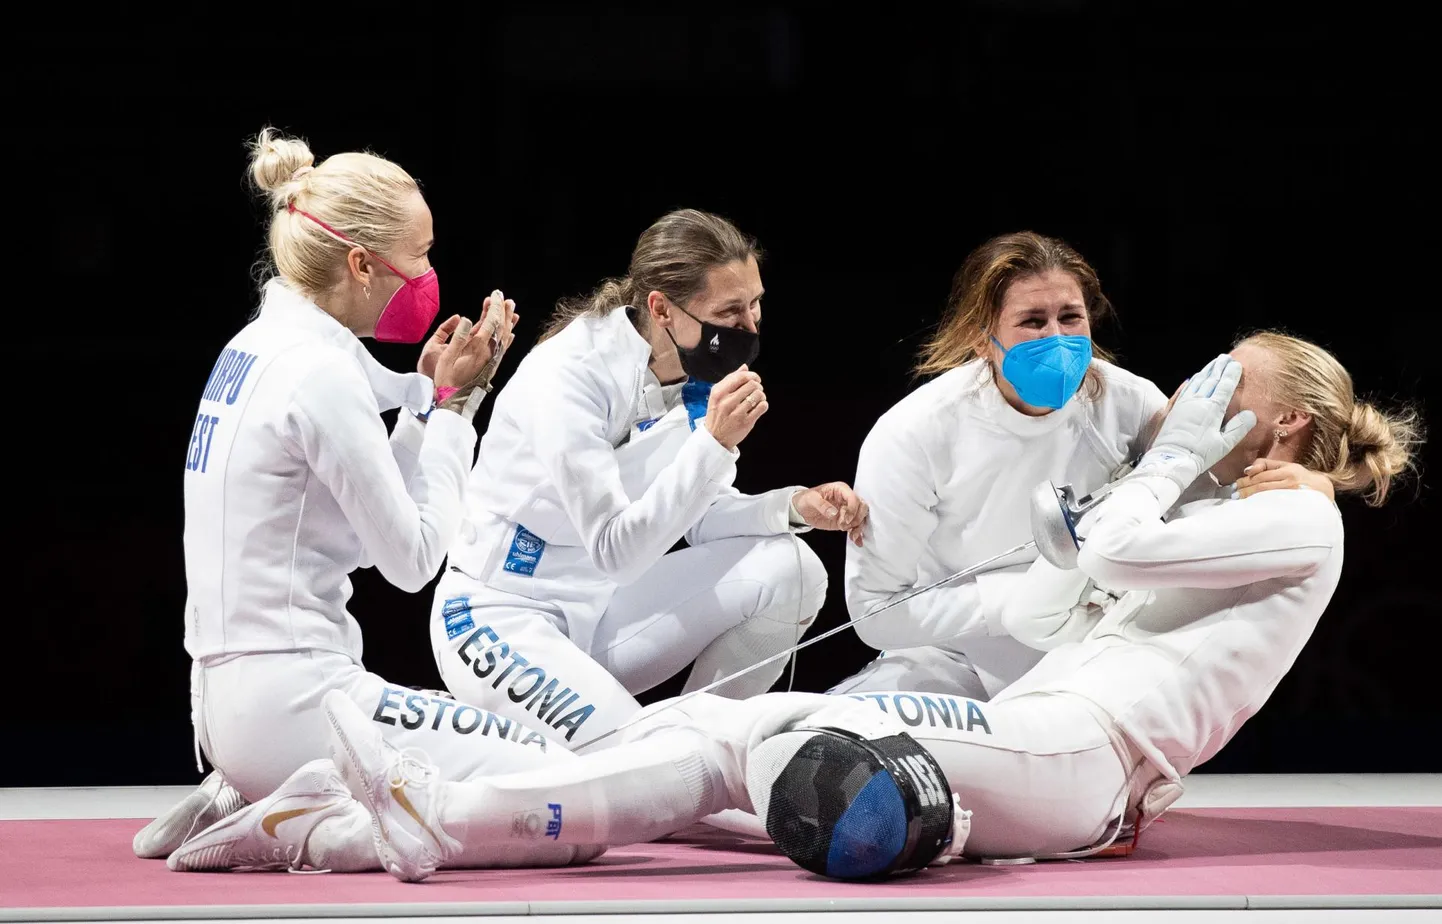 Postimehe aasta foto: "See on võit!" Eesti epeevehklejad Erika Kirpu, Julia Beljajeva, Katrina Lehis ja Irina Embrich juubeldavad pärast võitu Lõuna Korea üle.